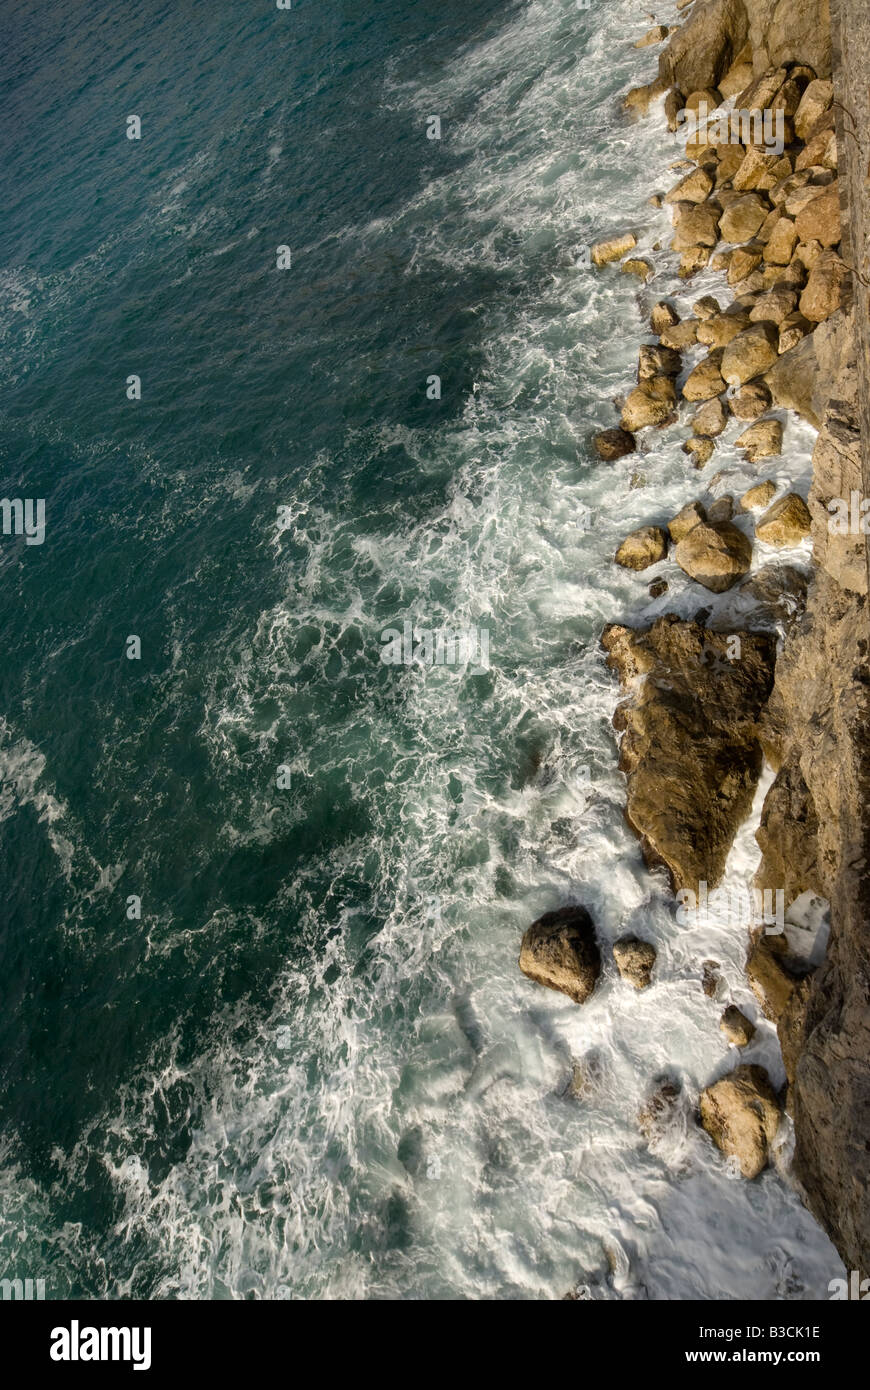 Frenado del mar contra la roca, Acantilado, Amalfi, Italia Foto de stock